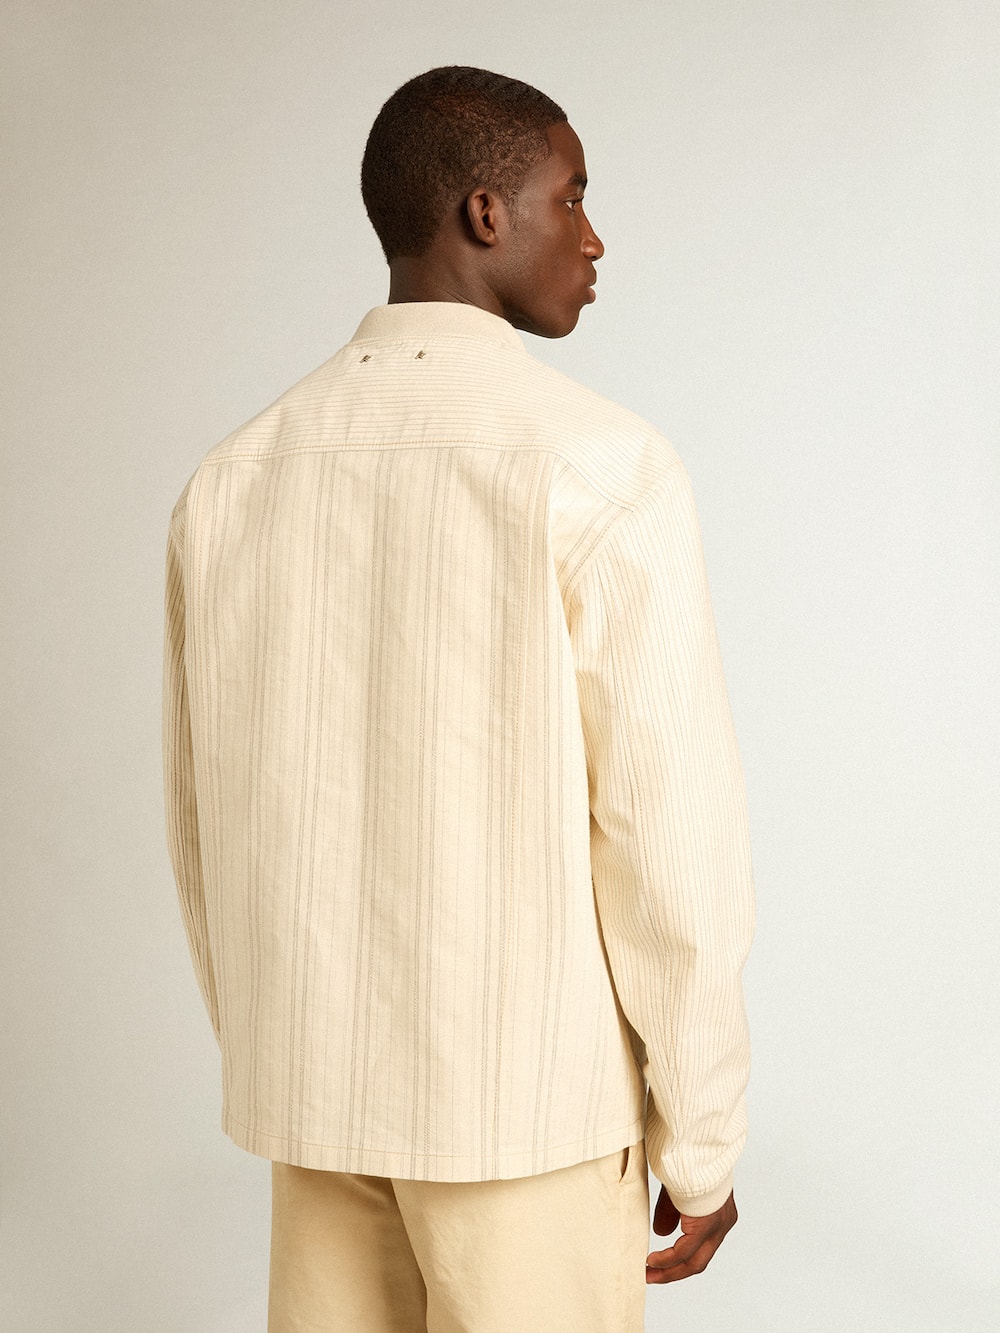 Golden Goose - Ekrüfarbene Jacke aus Baumwolle mit Reißverschluss in 